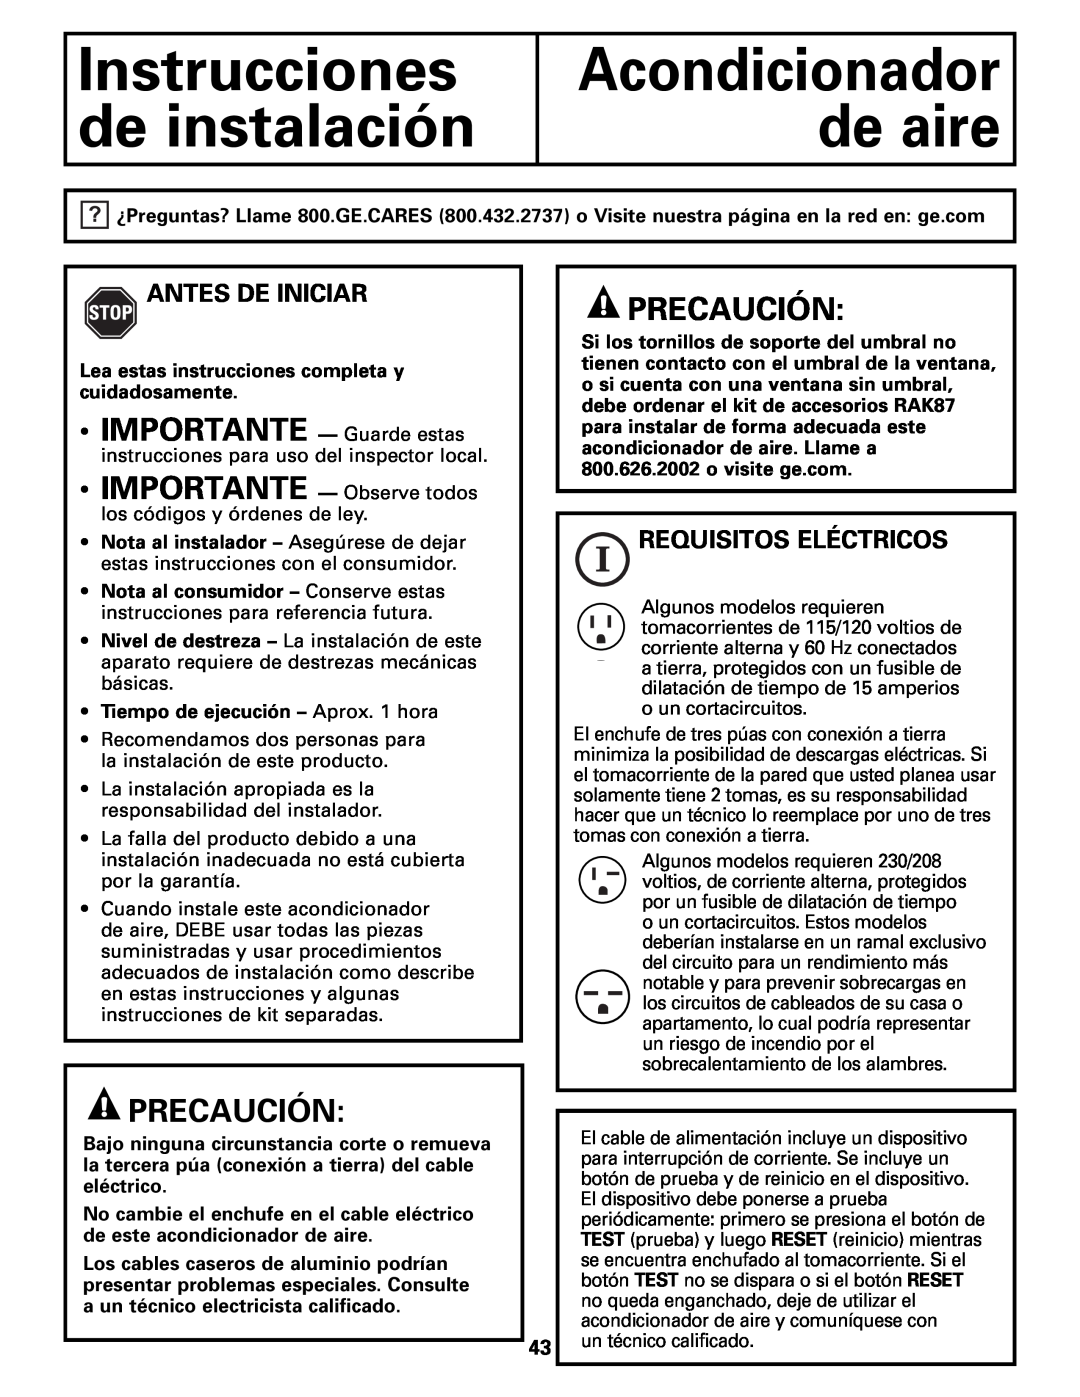 GE AEM10 Instrucciones de instalación, Precaución, Antes De Iniciar, Requisitos Eléctricos, Acondicionador de aire 